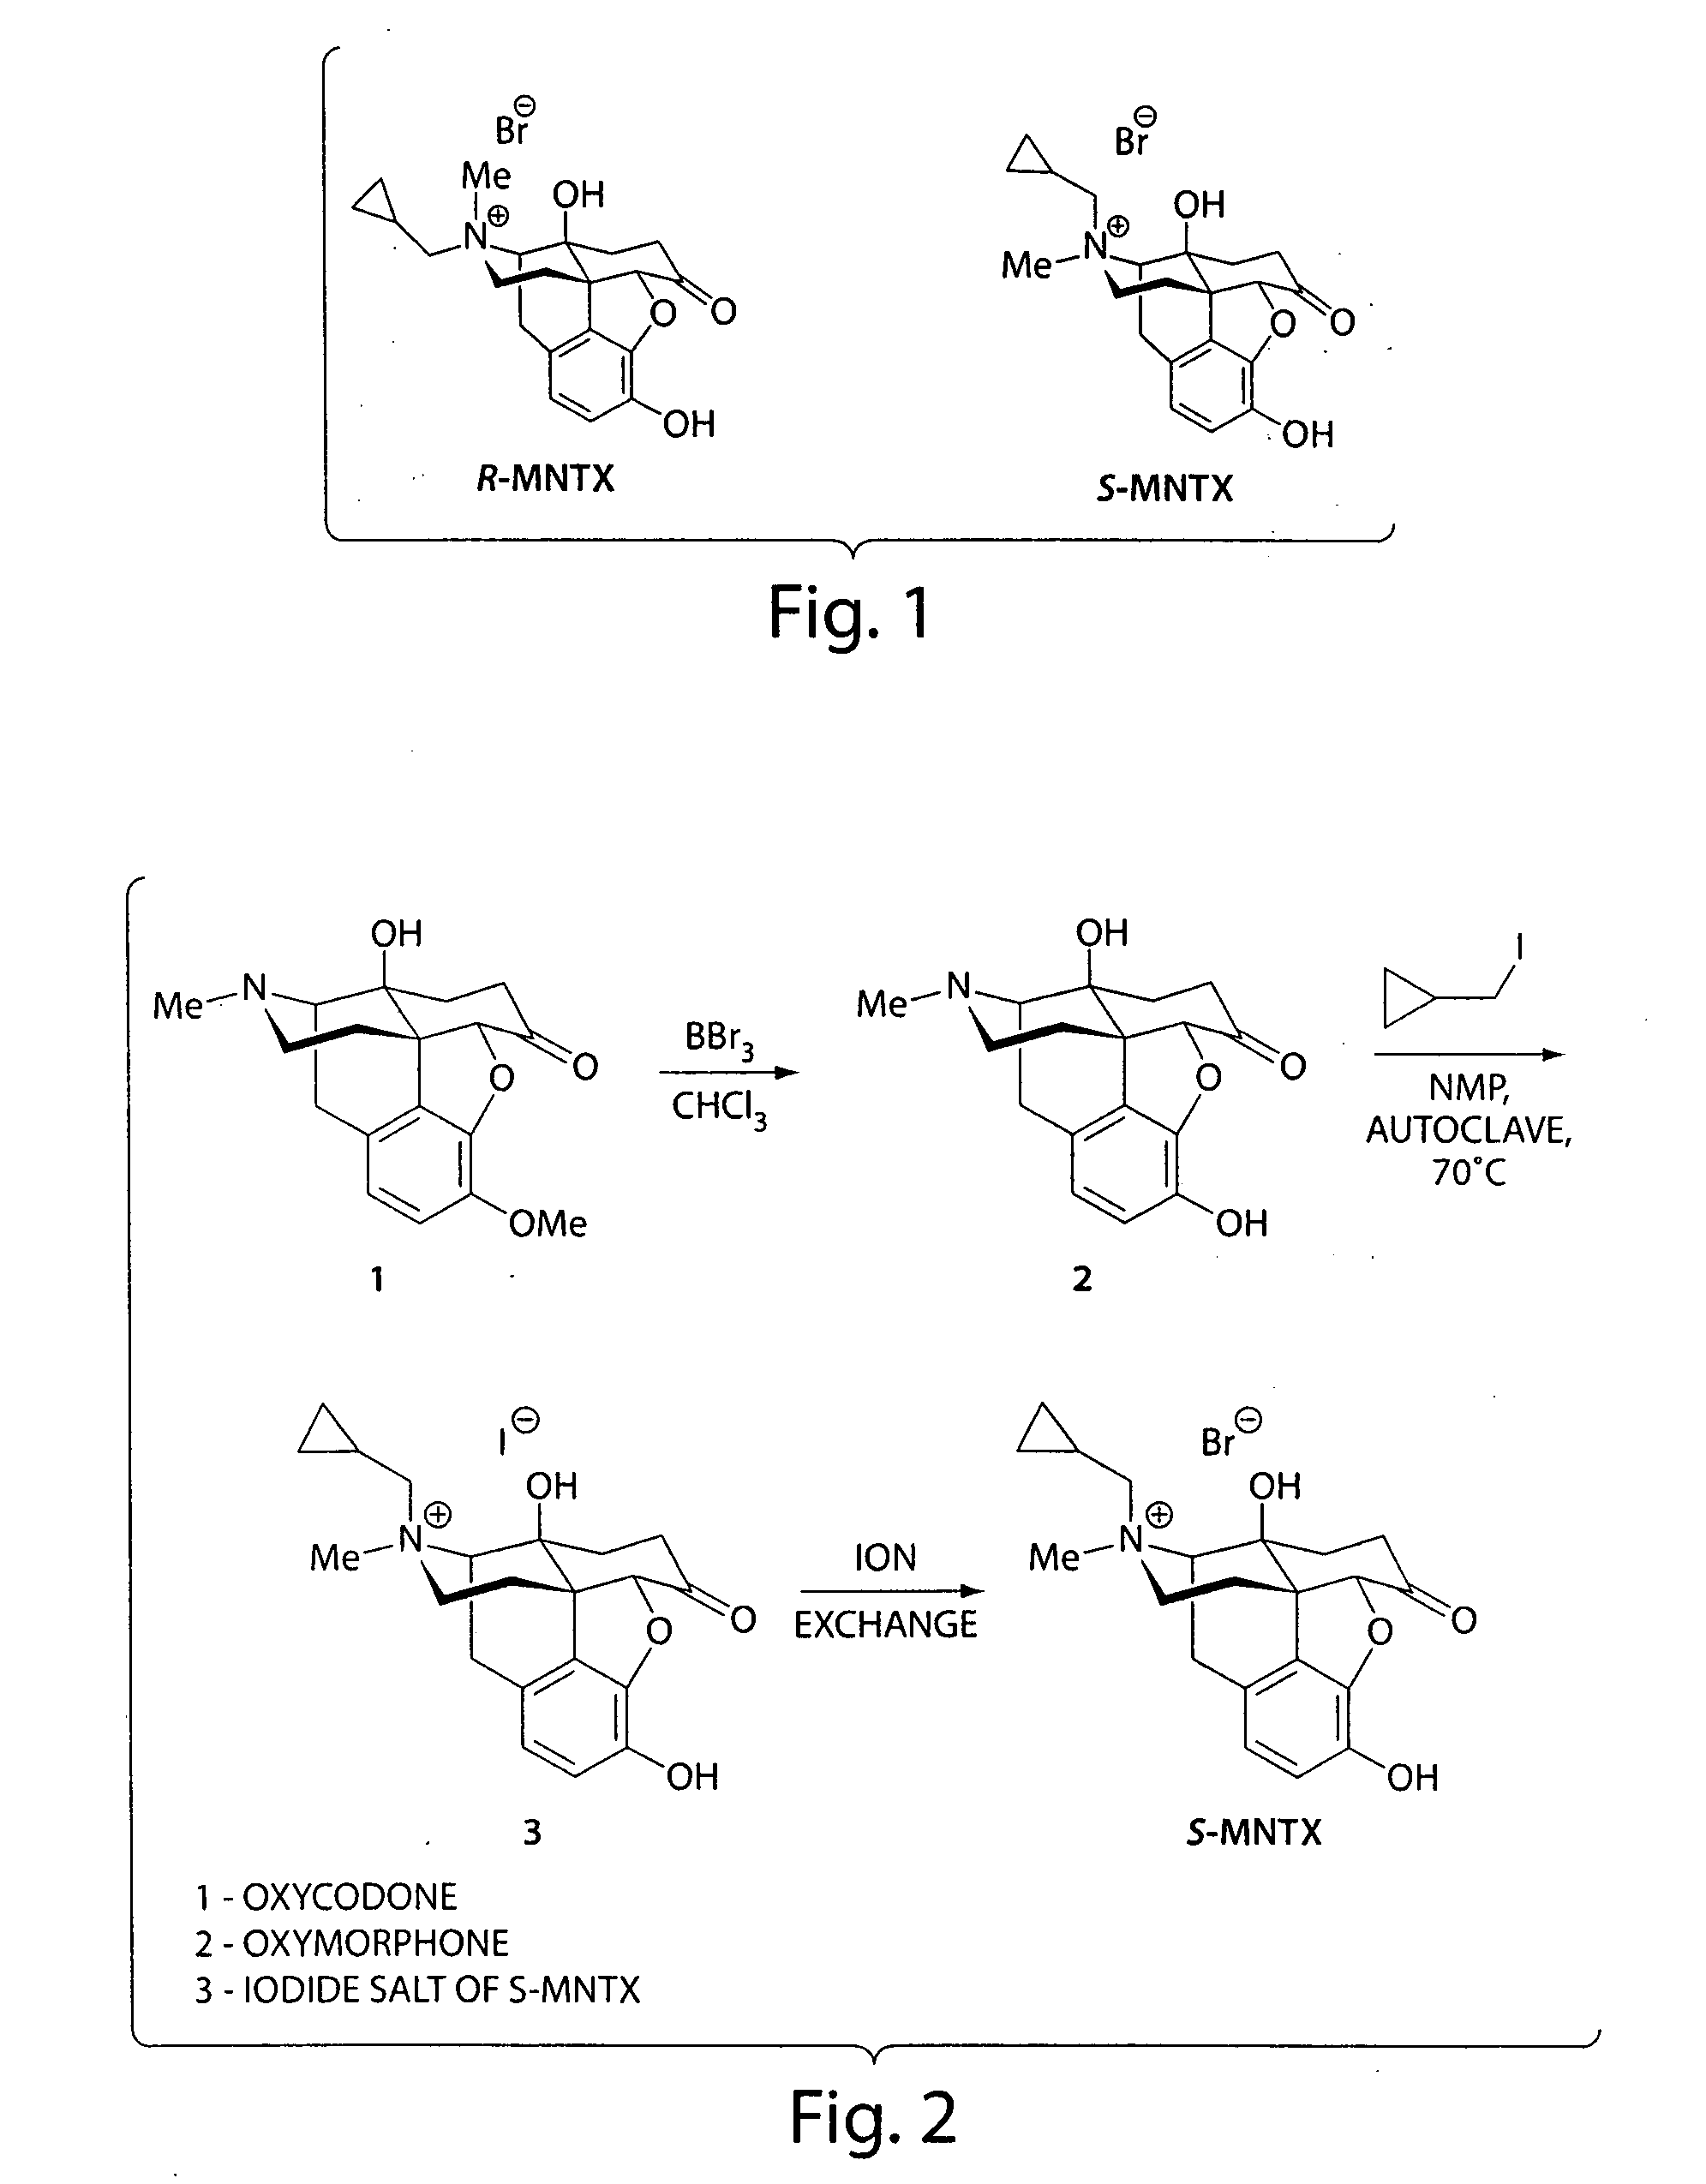 (S)-N-methylnaltrexone